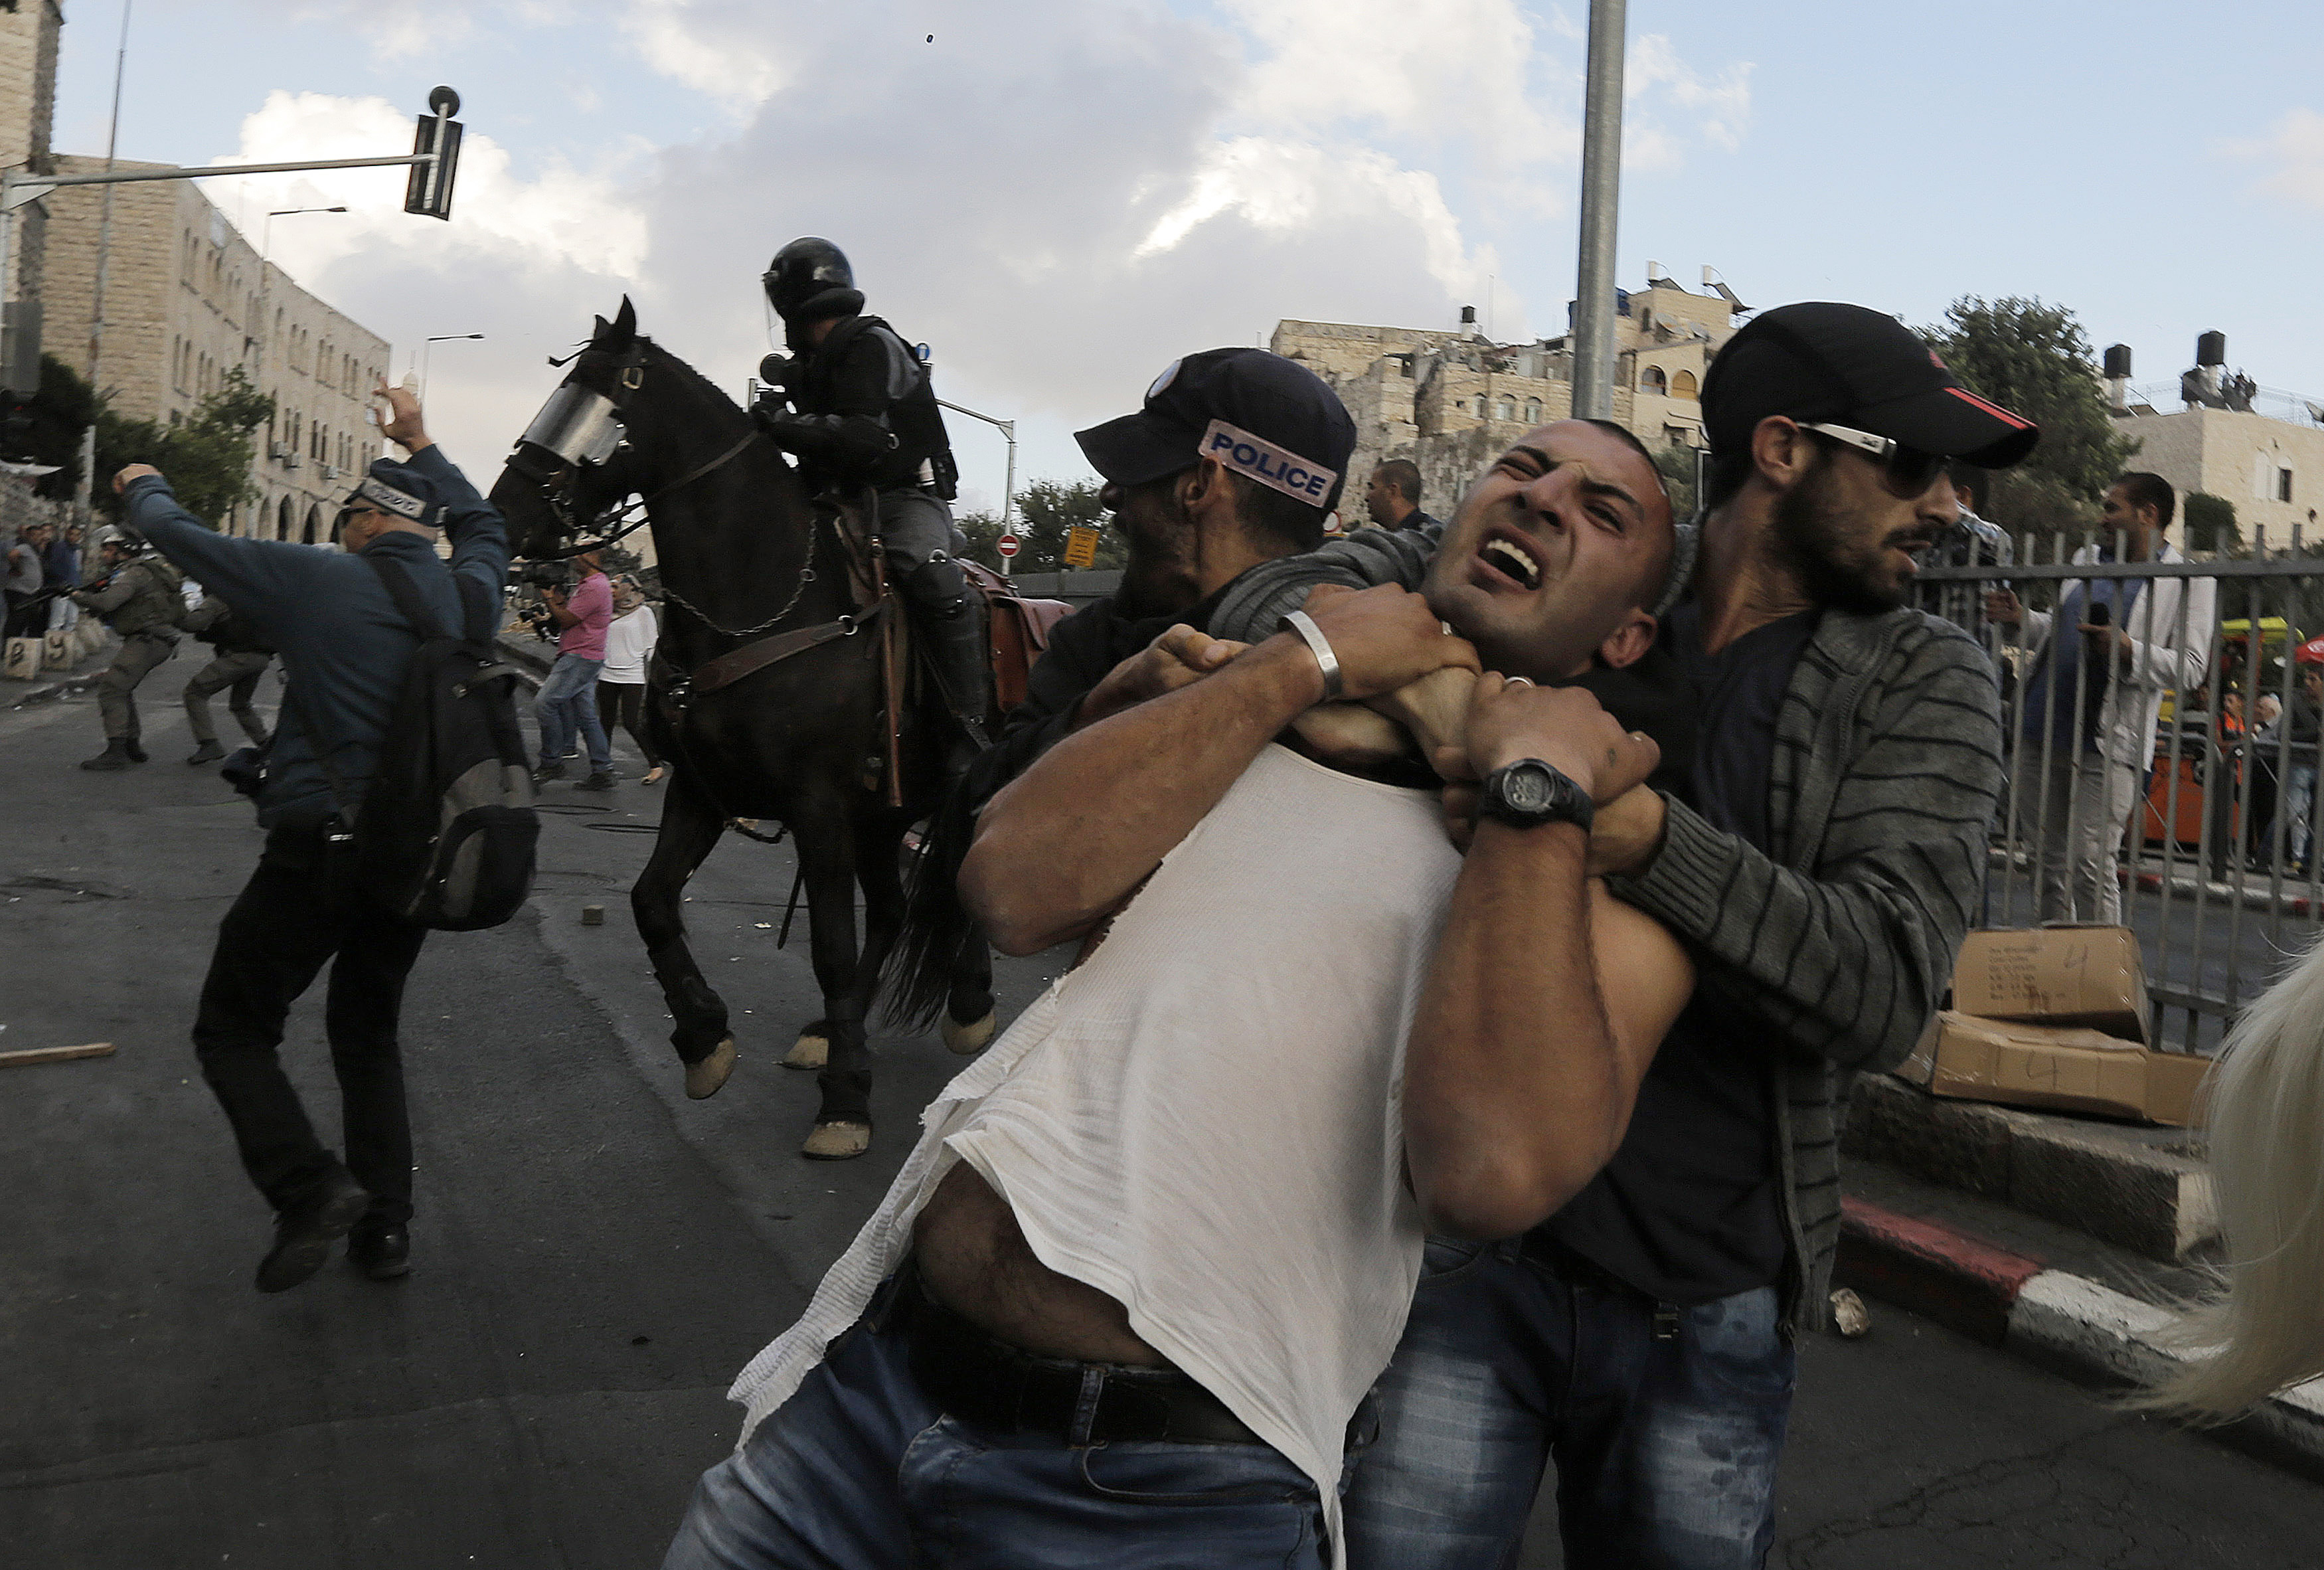 شرطي اسرائيلي بملابس مدنية يعتقل أحد المتظاهرين الفلسطينيين خلال اشتباكات في مظاهرة بالقرب من بوابة دمشق في مدينة القدس القديمة في 24 سبتمبر 2013